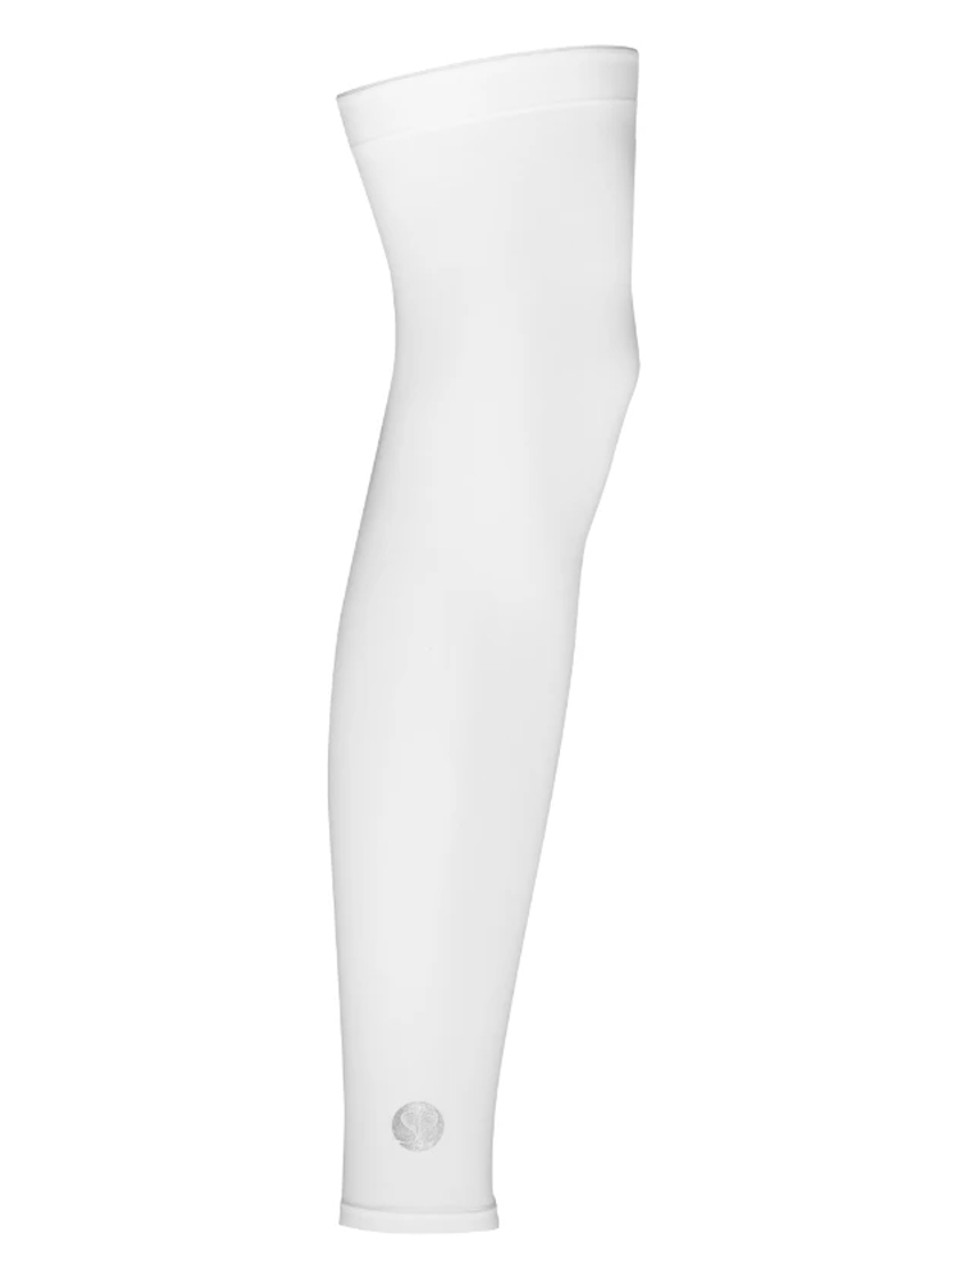 Basic White Leg Sleeve